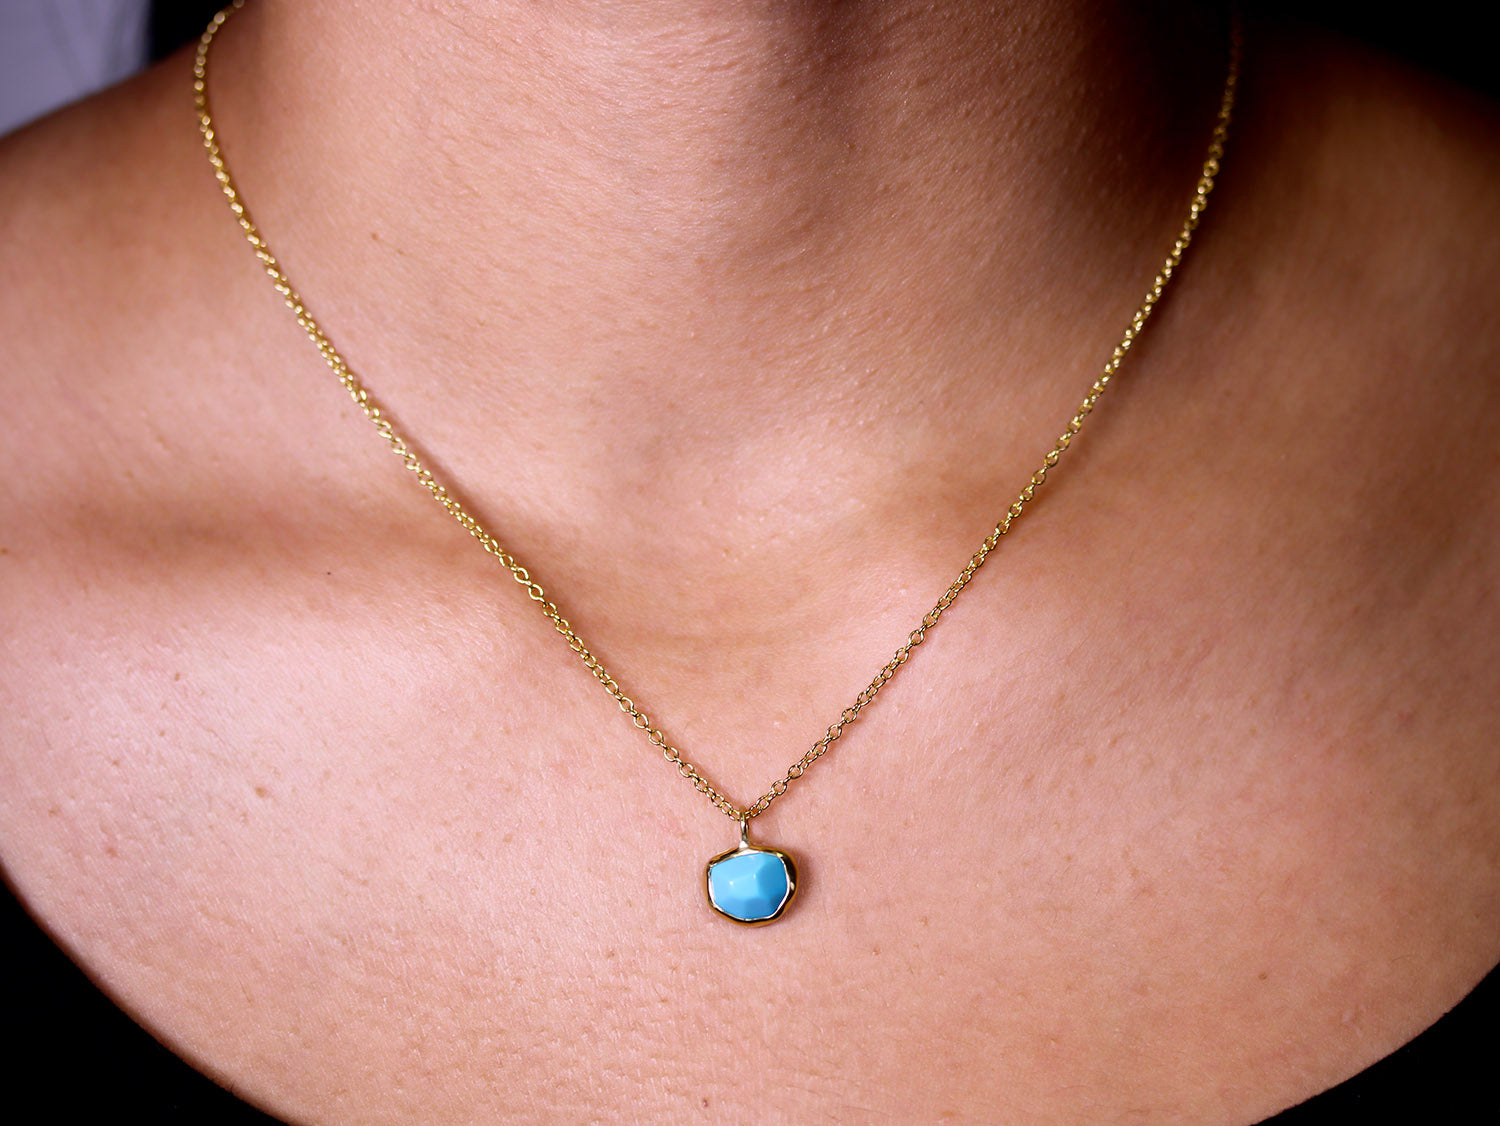 Bezel Set Turquoise Pendant Necklace